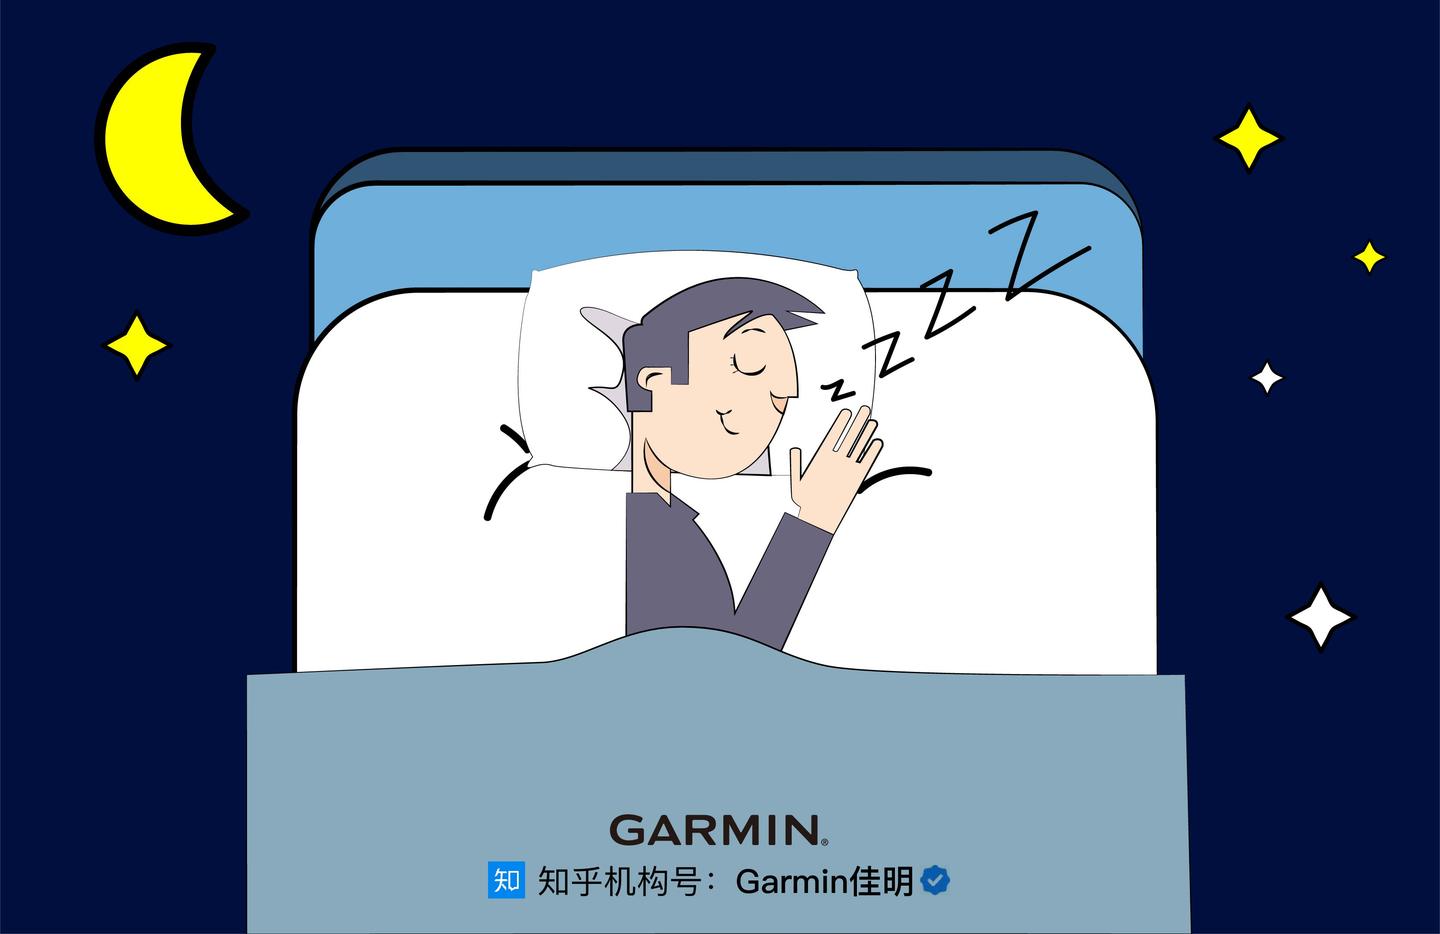 睡眠质量解读:从躺下到睡着的过程,你的身体会经过这5